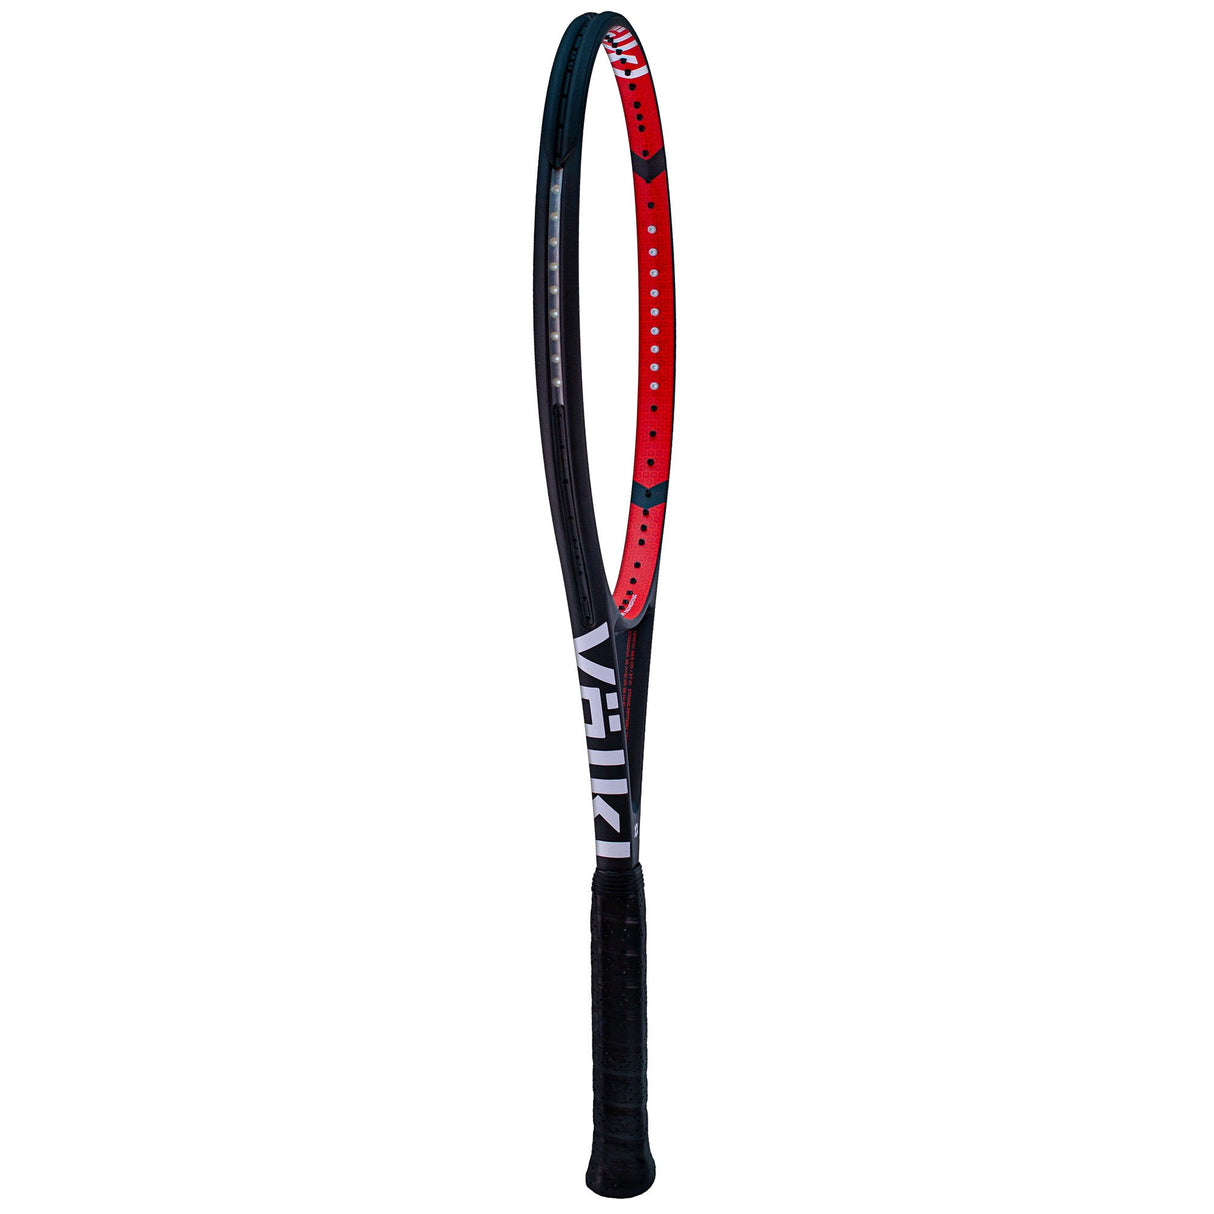 |Volkl V-Cell 8 285 Tennis Racket - Slant|